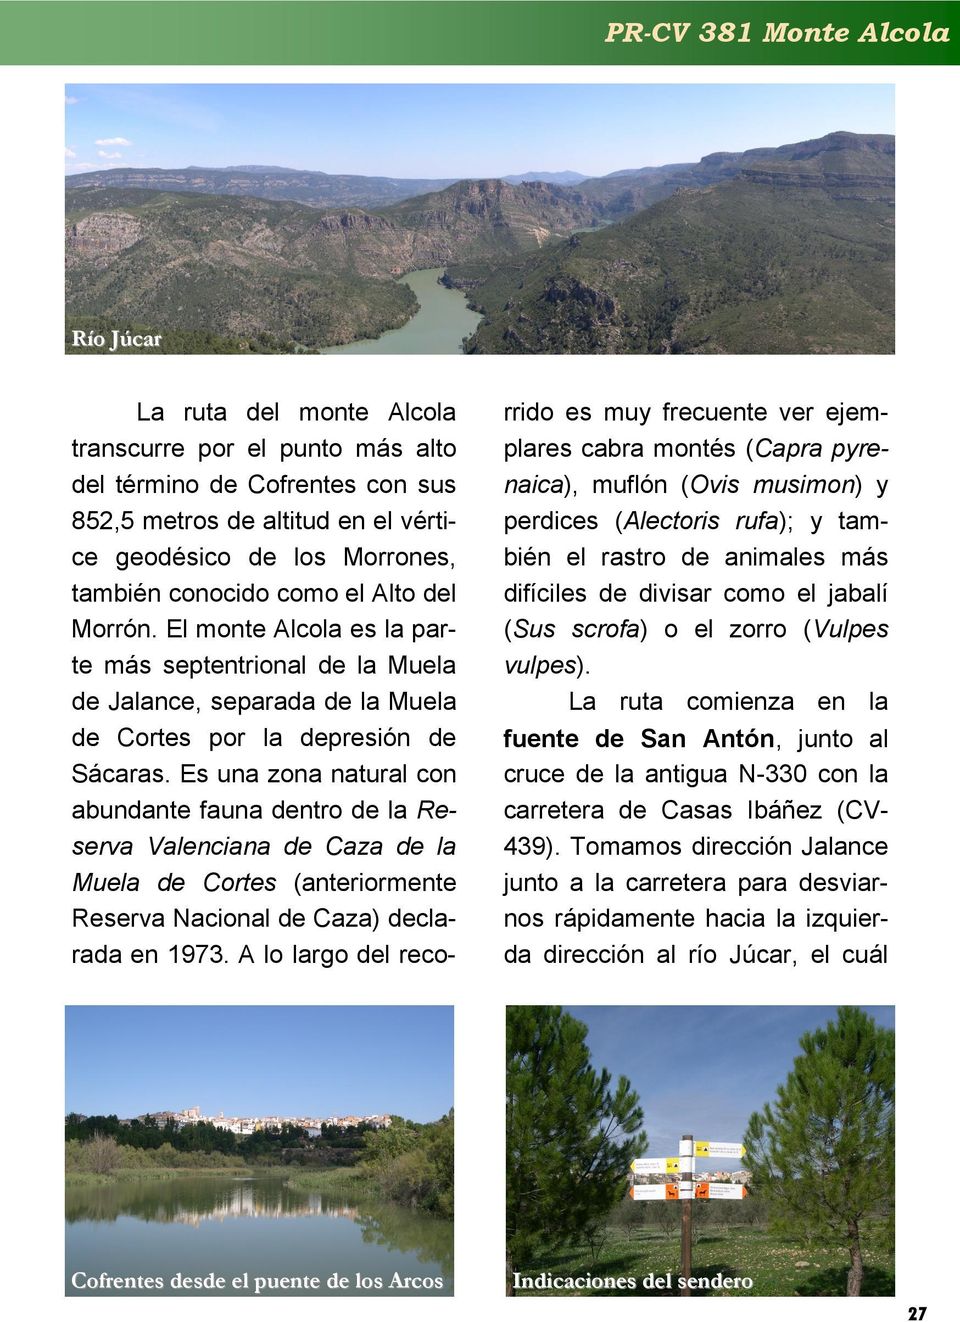 Es una zona natural con abundante fauna dentro de la Reserva Valenciana de Caza de la Muela de Cortes (anteriormente Reserva Nacional de Caza) declarada en 1973.